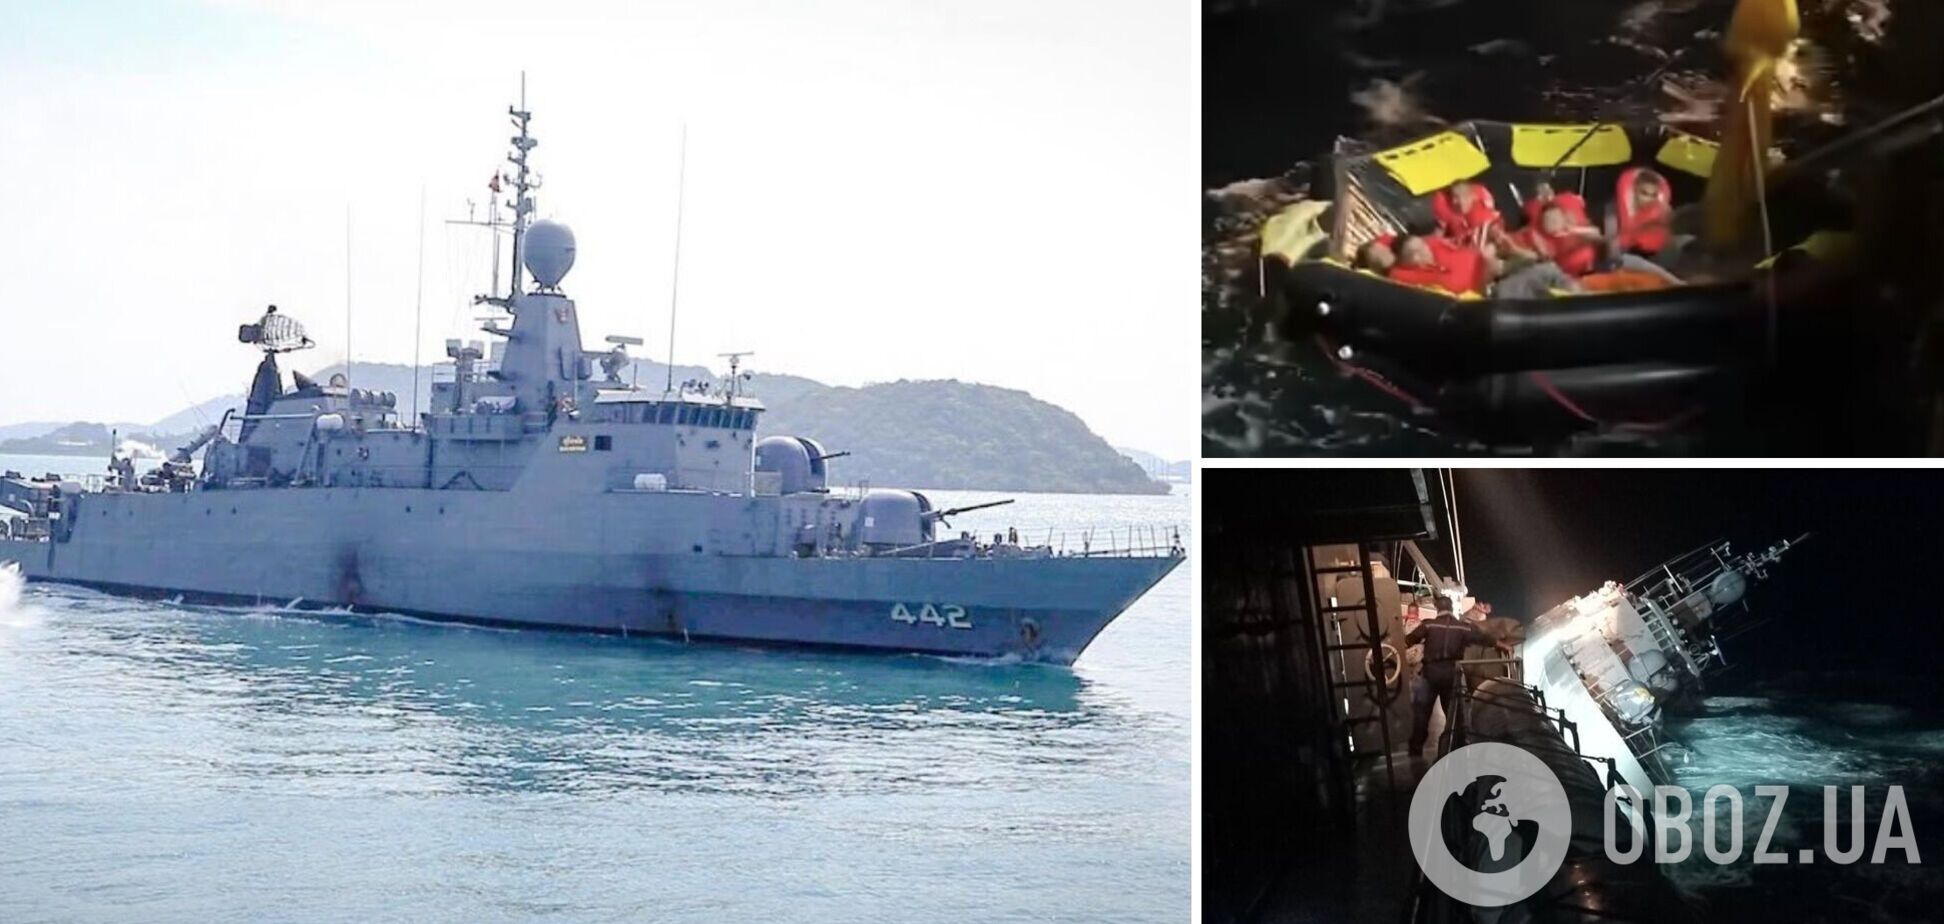 В Таиланде затонул военный корабль, пропали без вести десятки морпехов. Видео с места трагедии